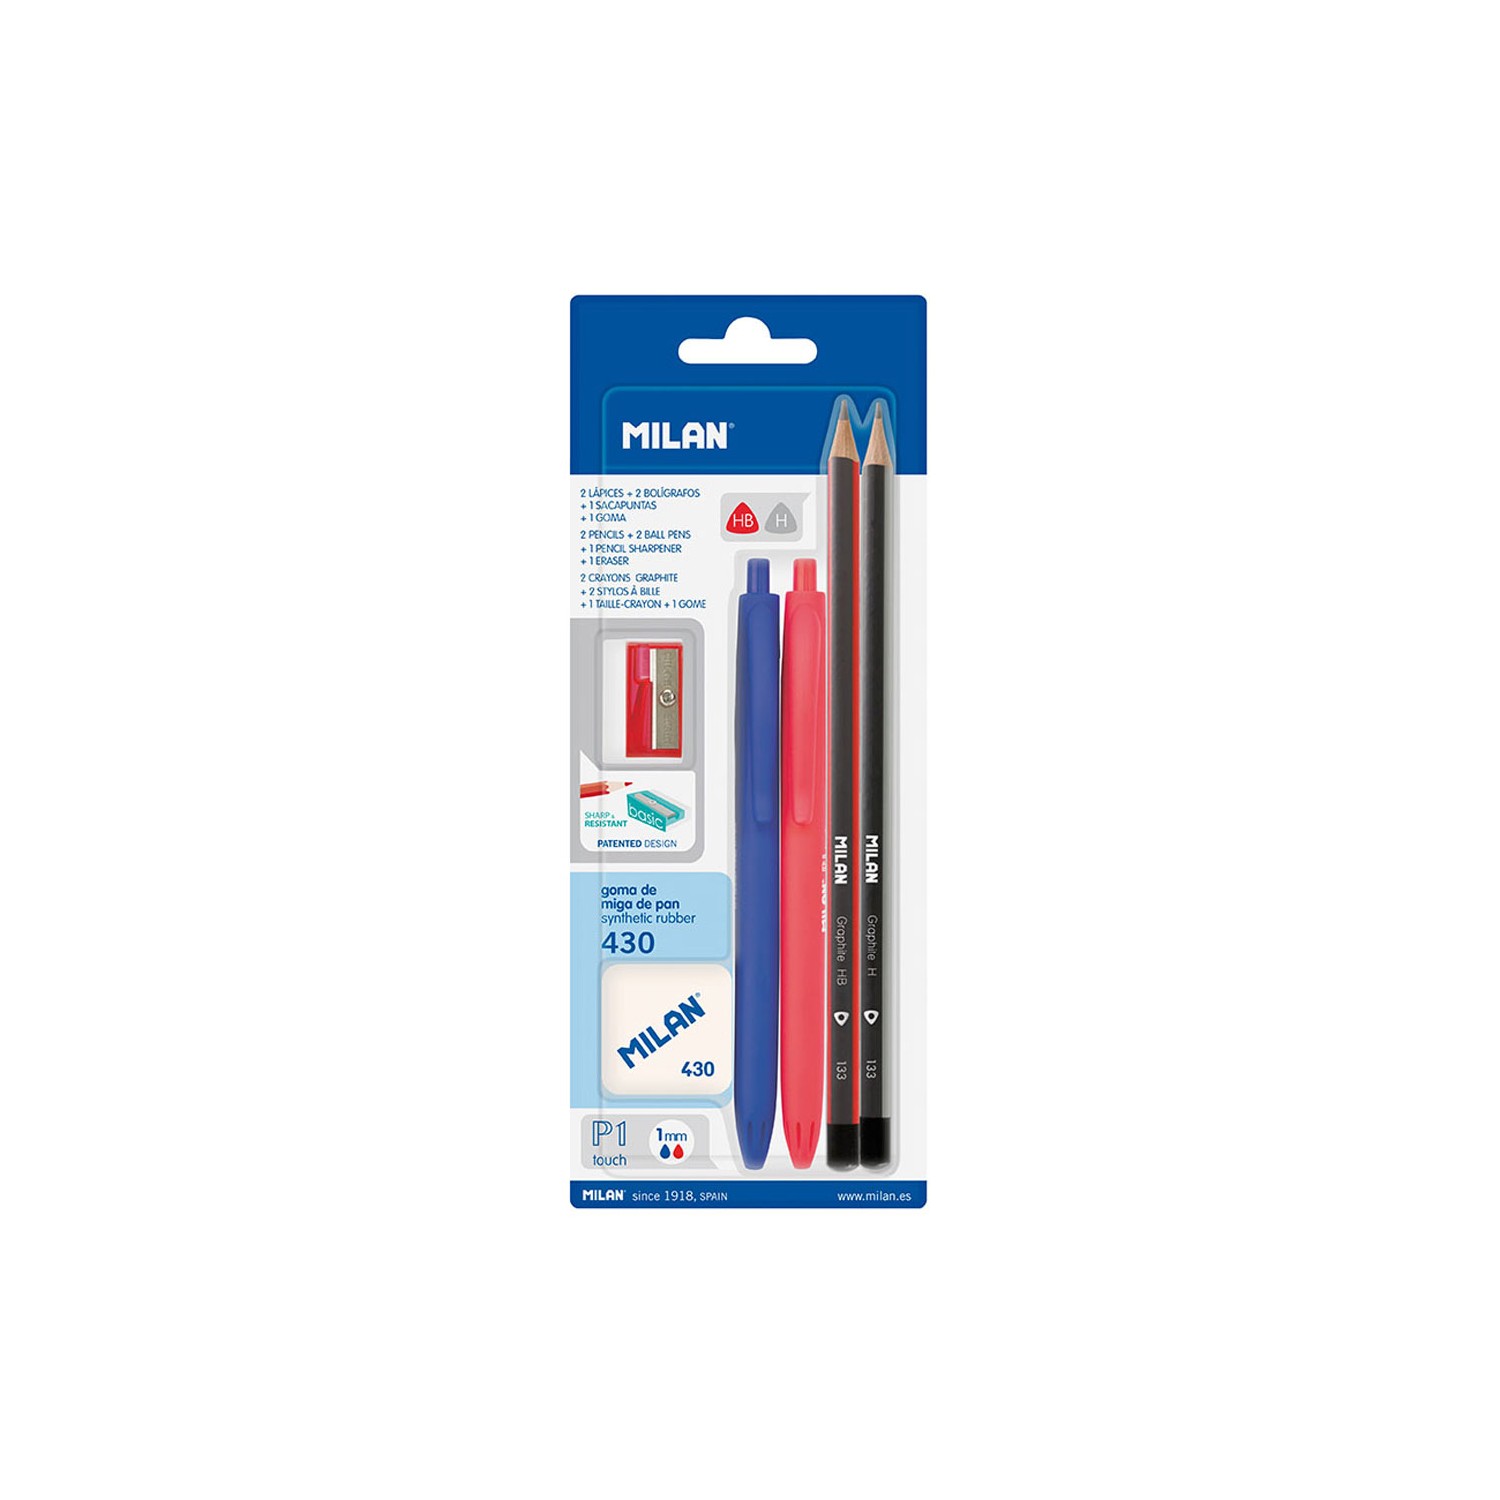 Blister con 2 bolígrafos p1 (azul/rojo), 2 lapices grafito hb y h, goma 430 y sacapuntas milan colores / modelos surtidos